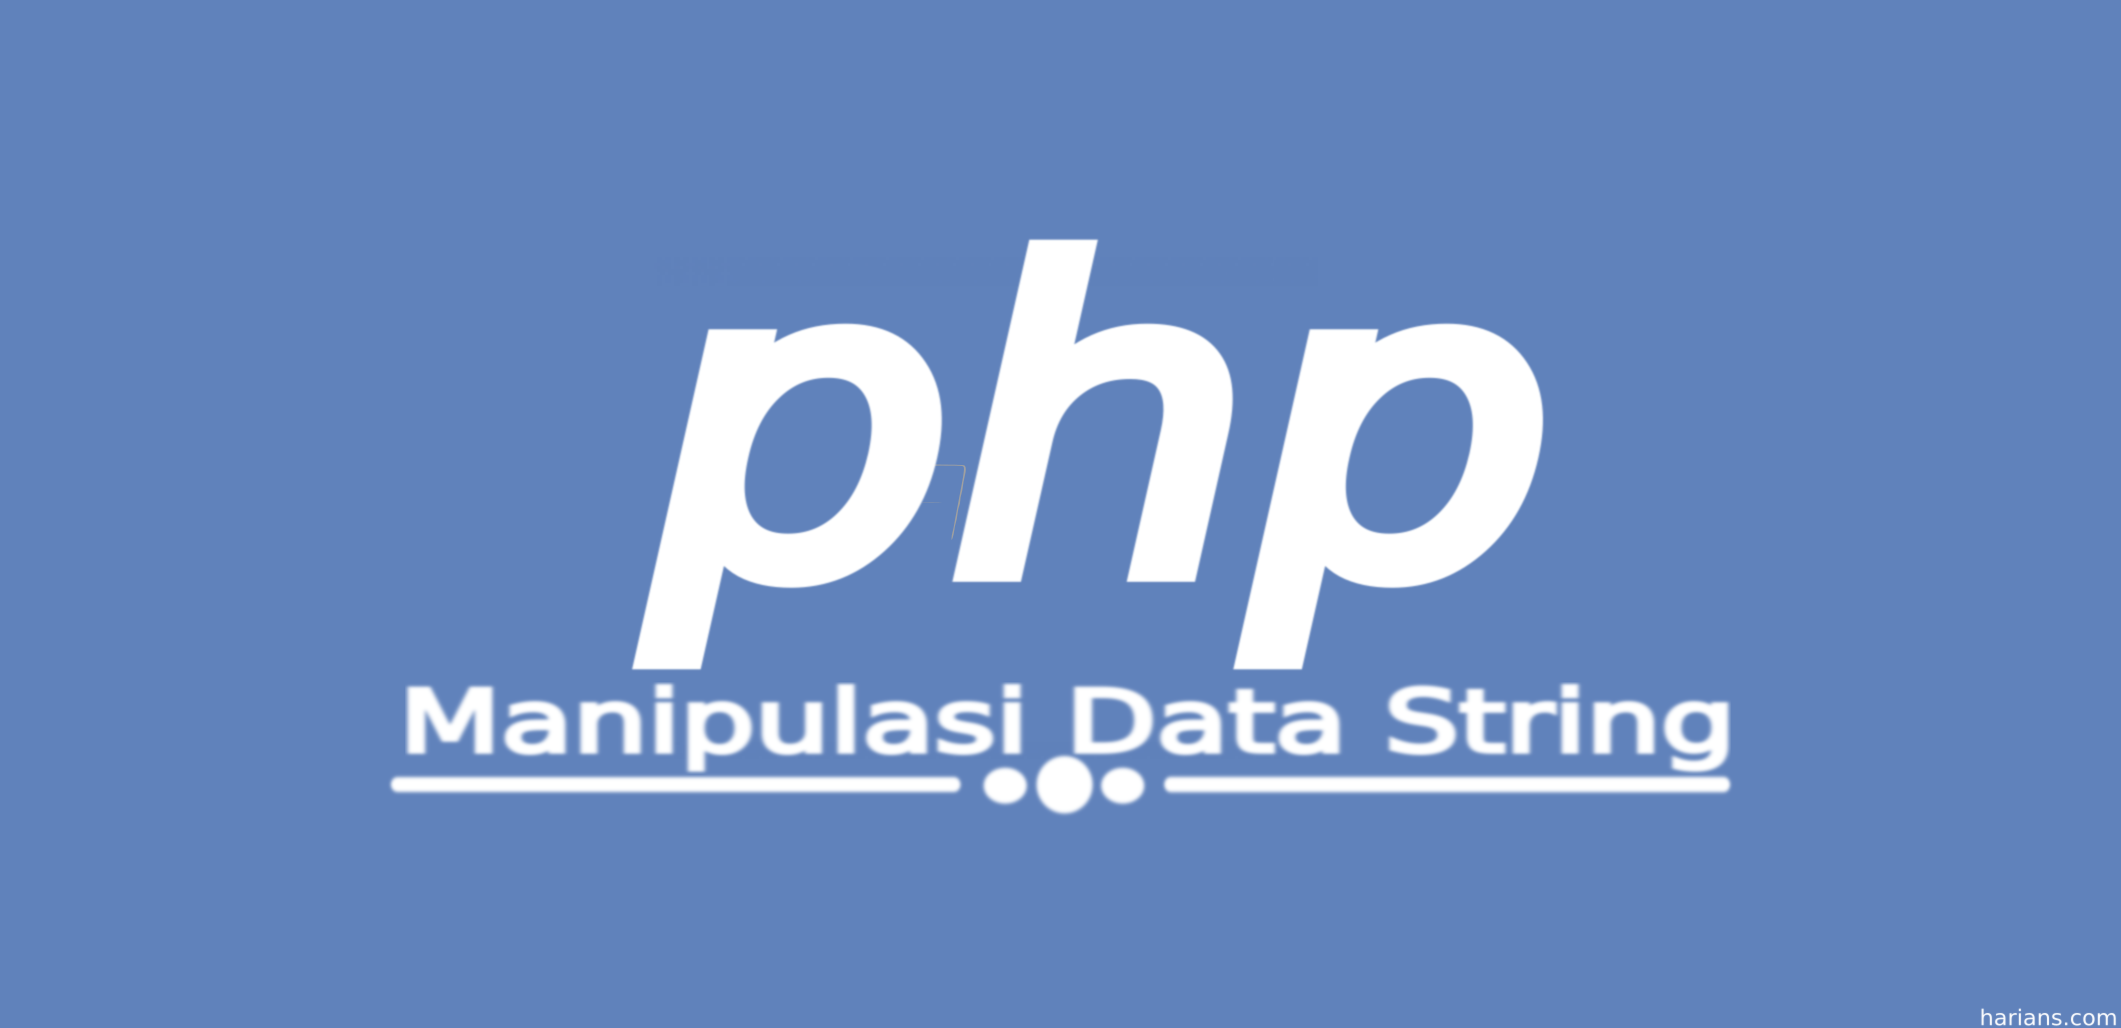 harians.com Manipulasi String pada PHP